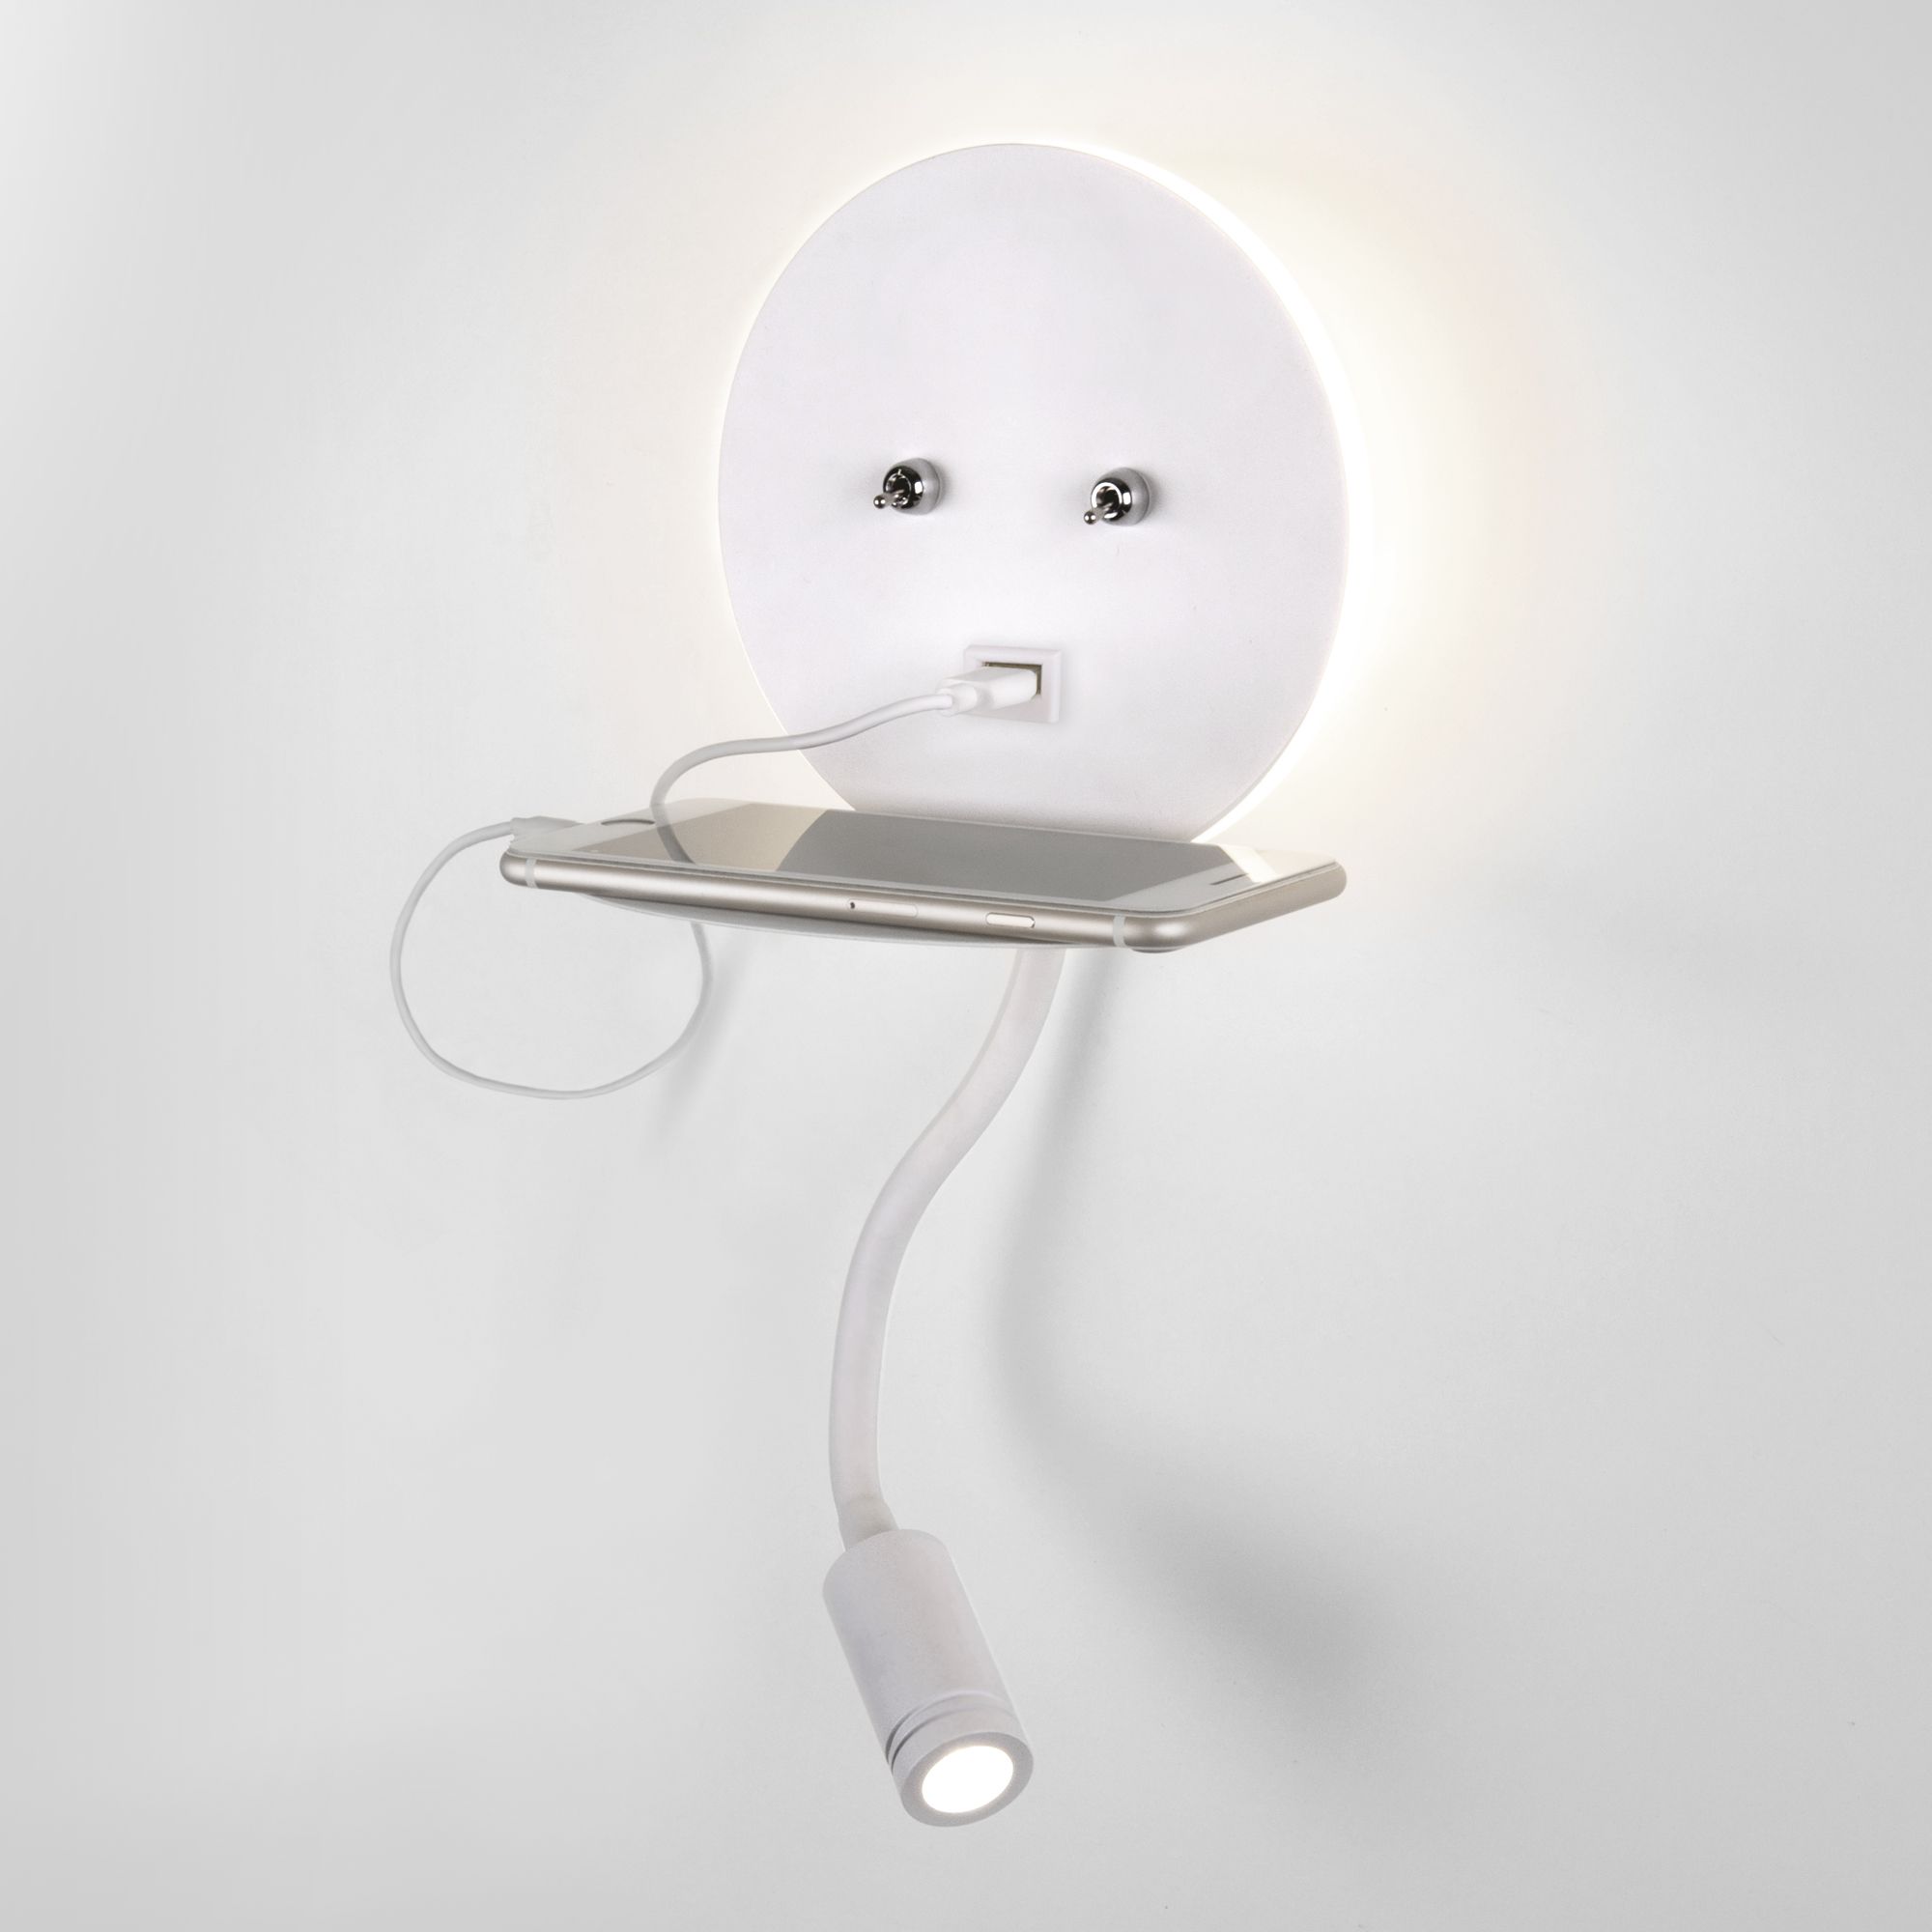 Настенный светодиодный светильник Lungo LED MRL LED 1017 белый